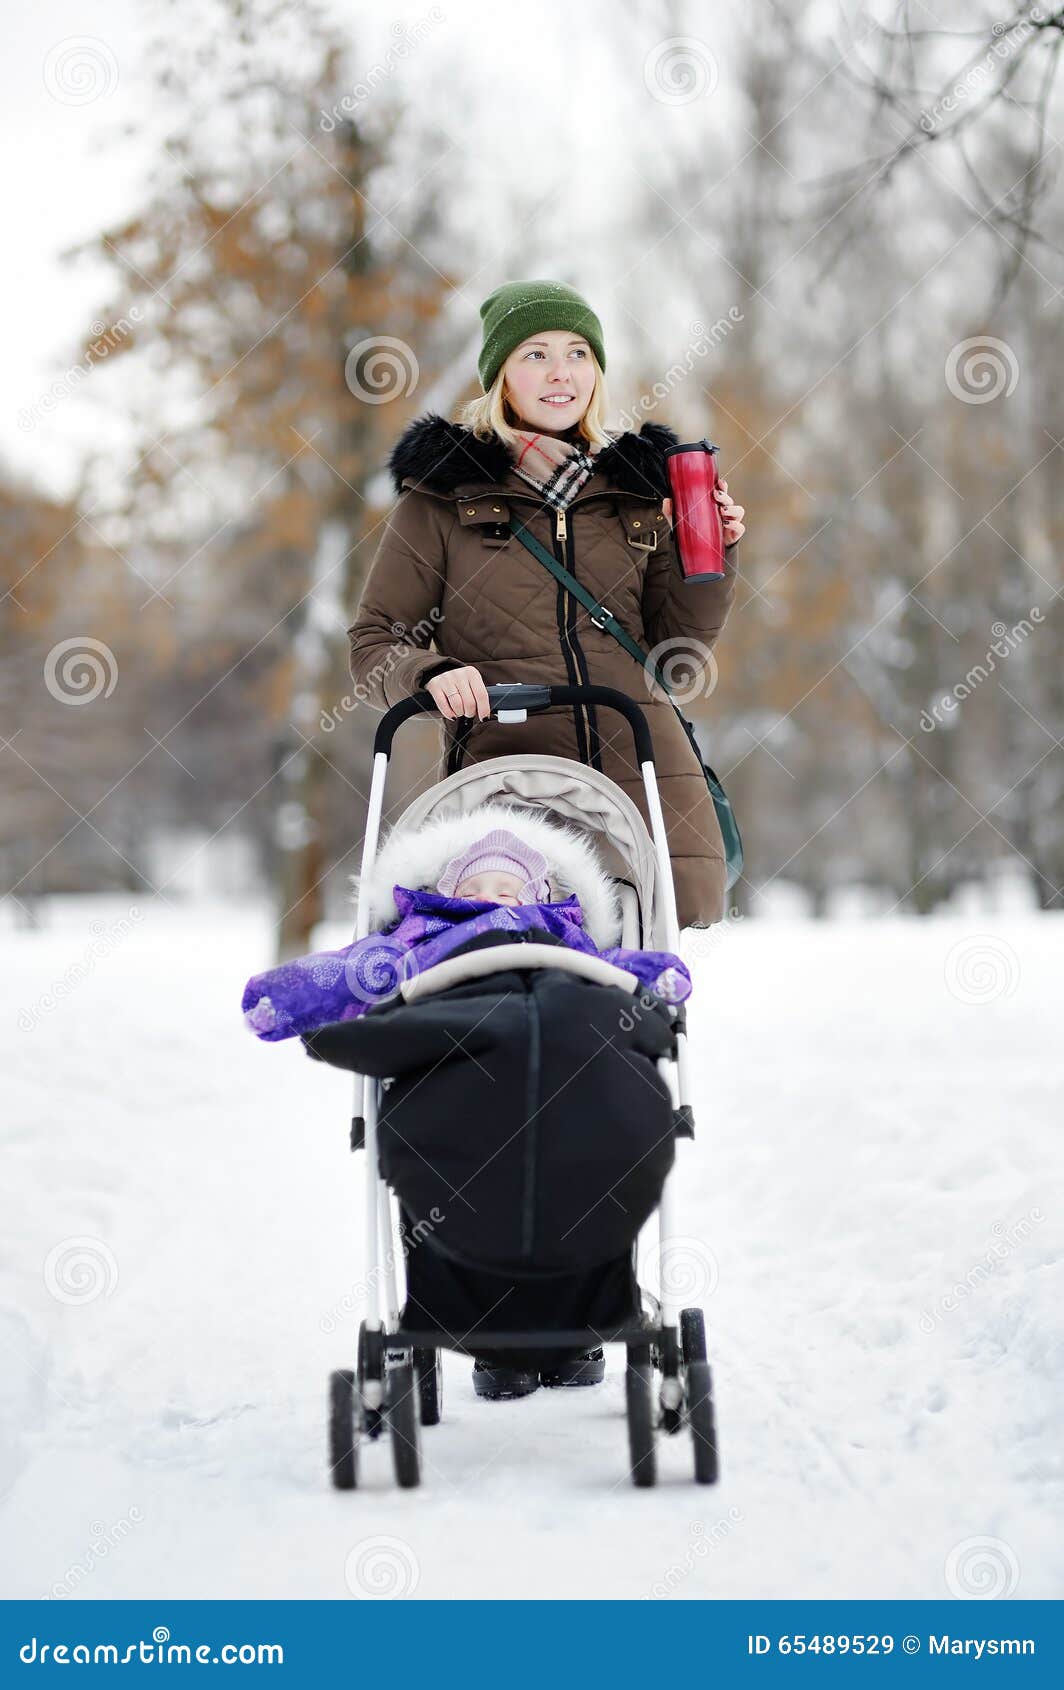 stroller for winter